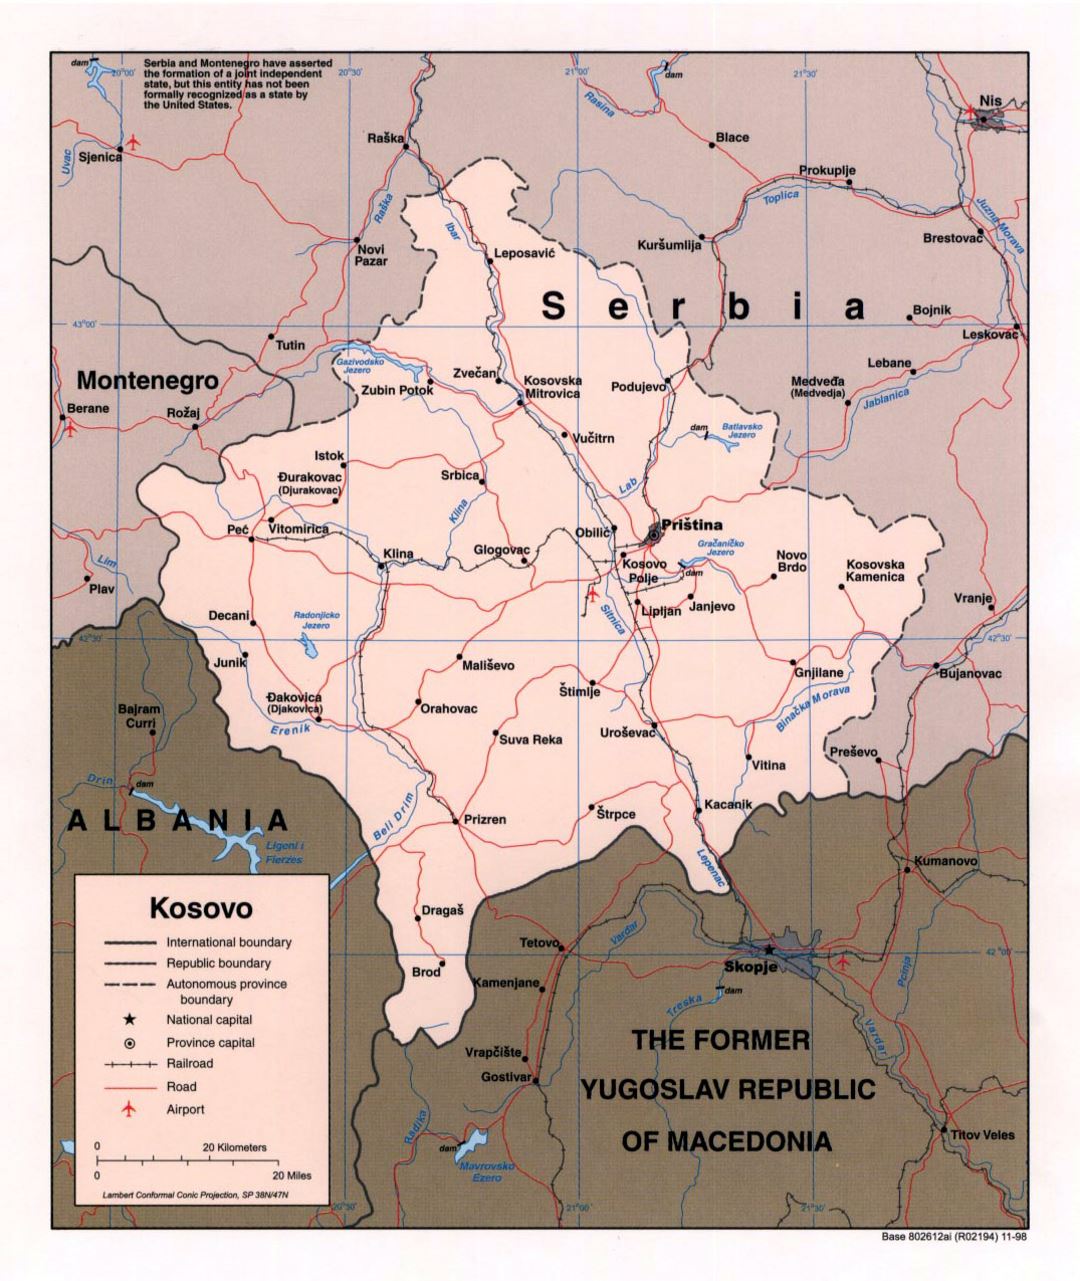 Mapa político detallado de Kosovo con carreteras, ferrocarriles, principales ciudades y aeropuertos - 1998